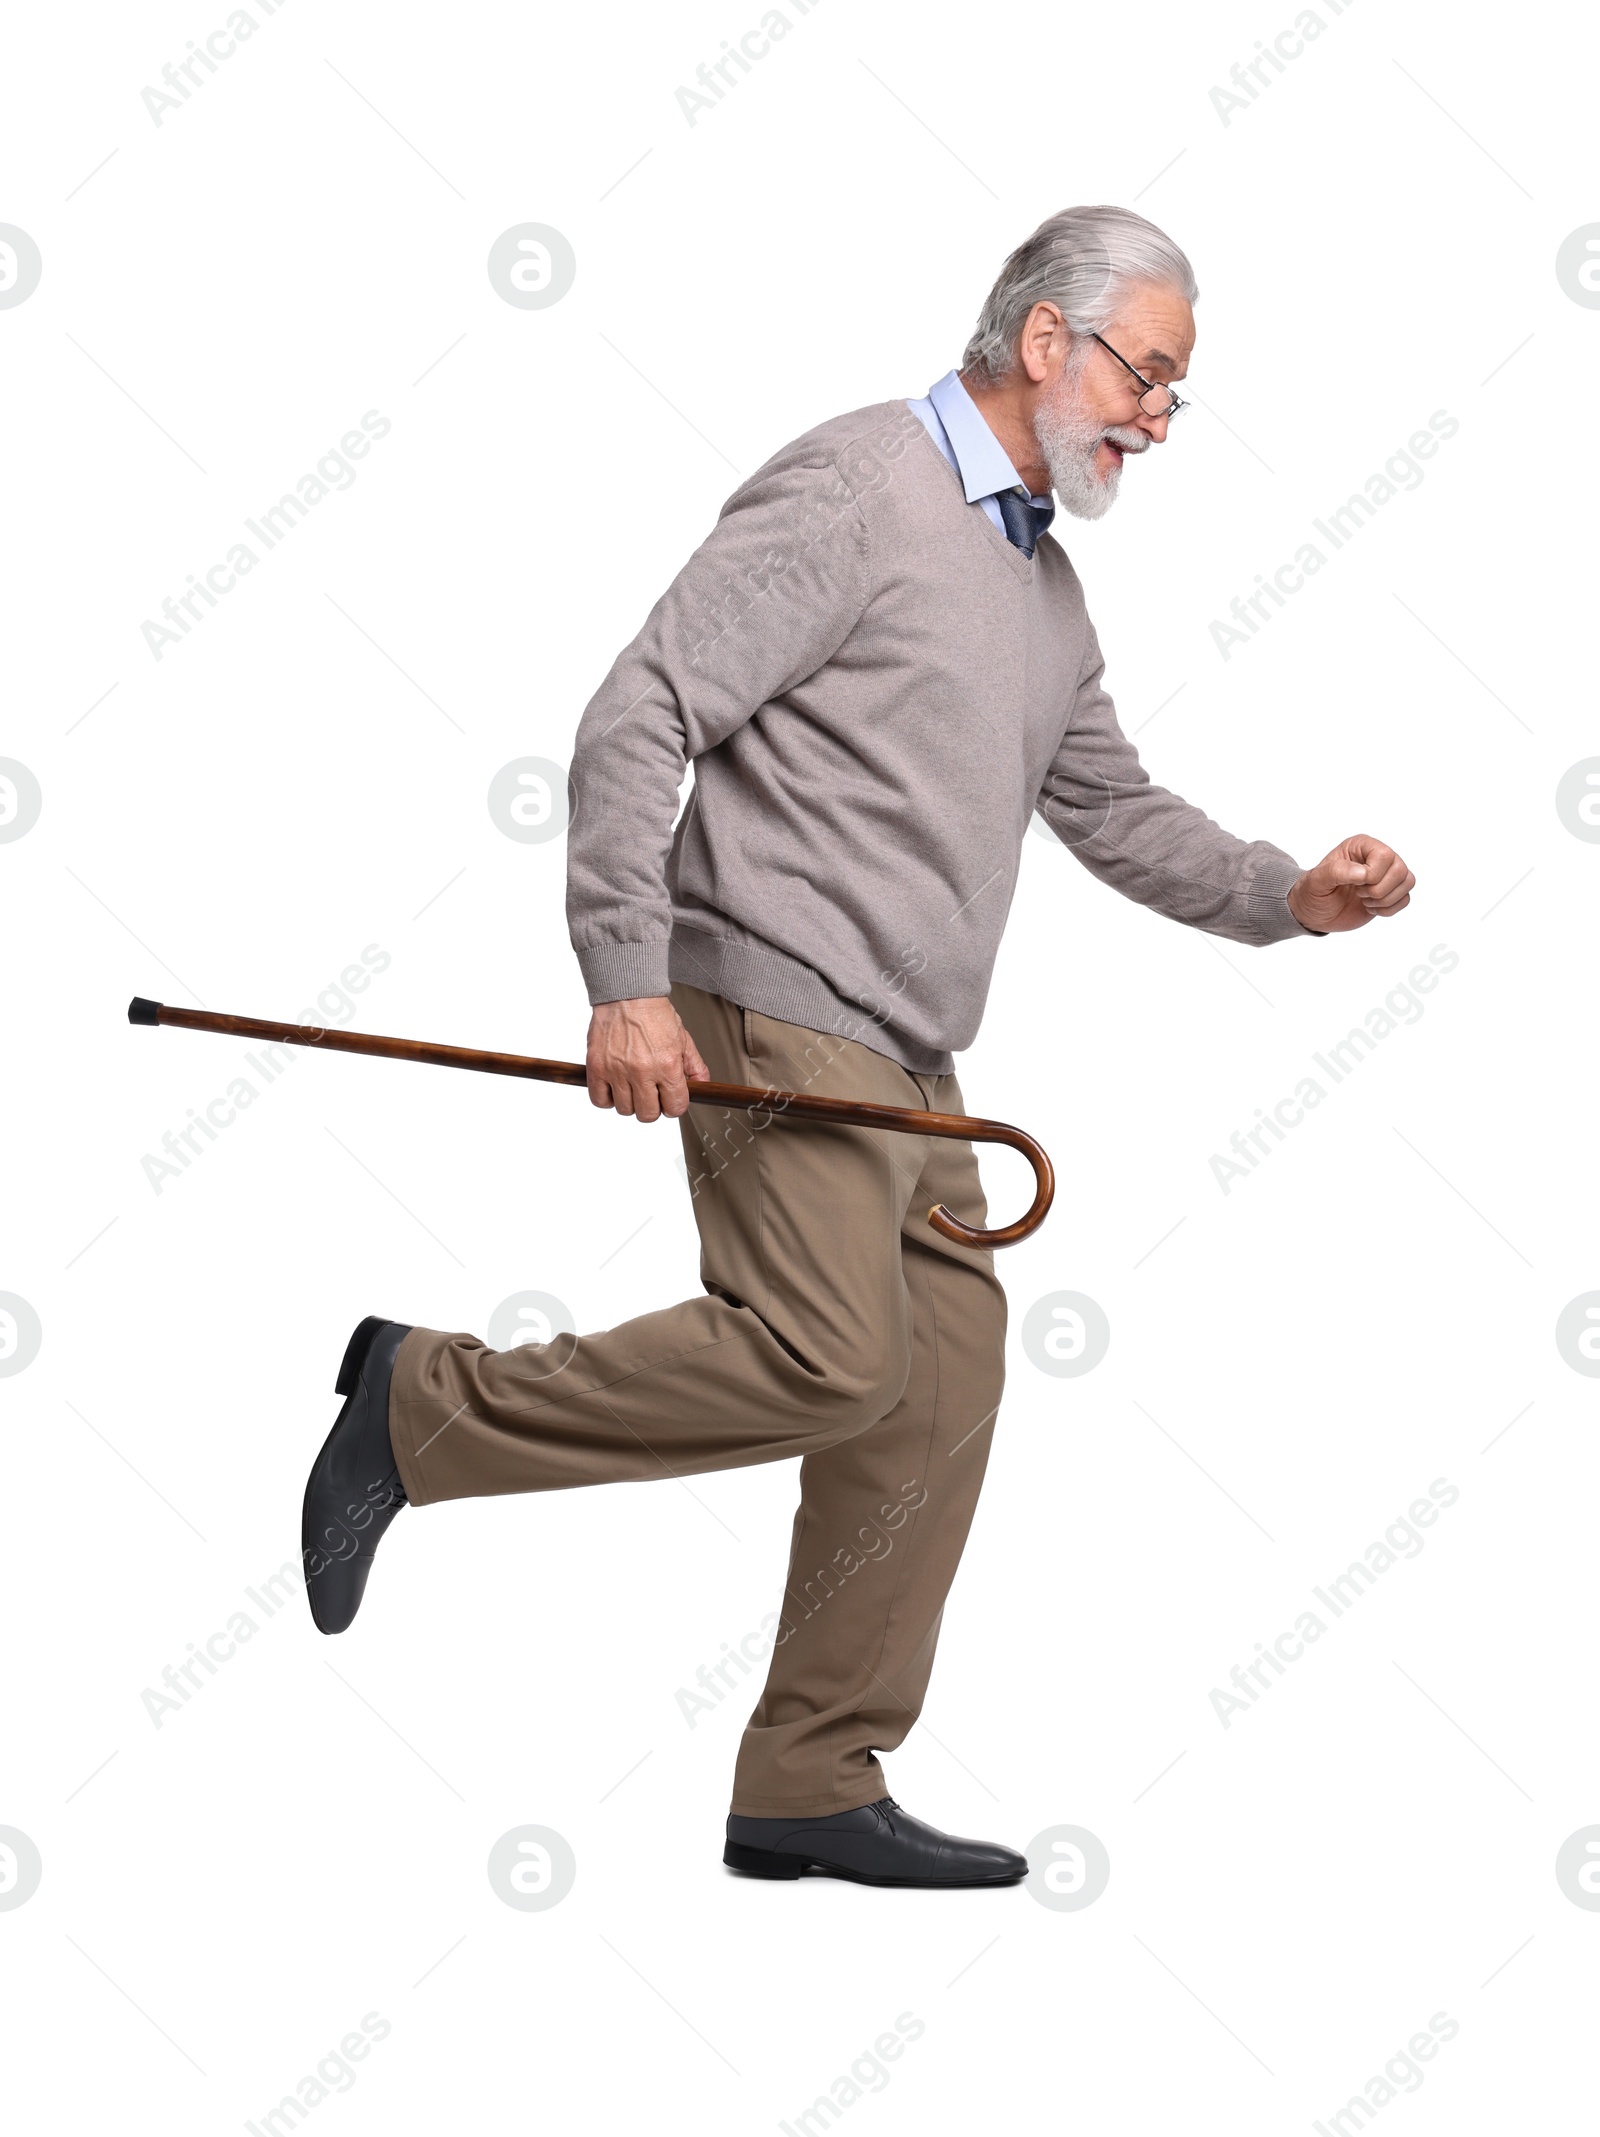 Photo of Senior man with walking cane running on white background